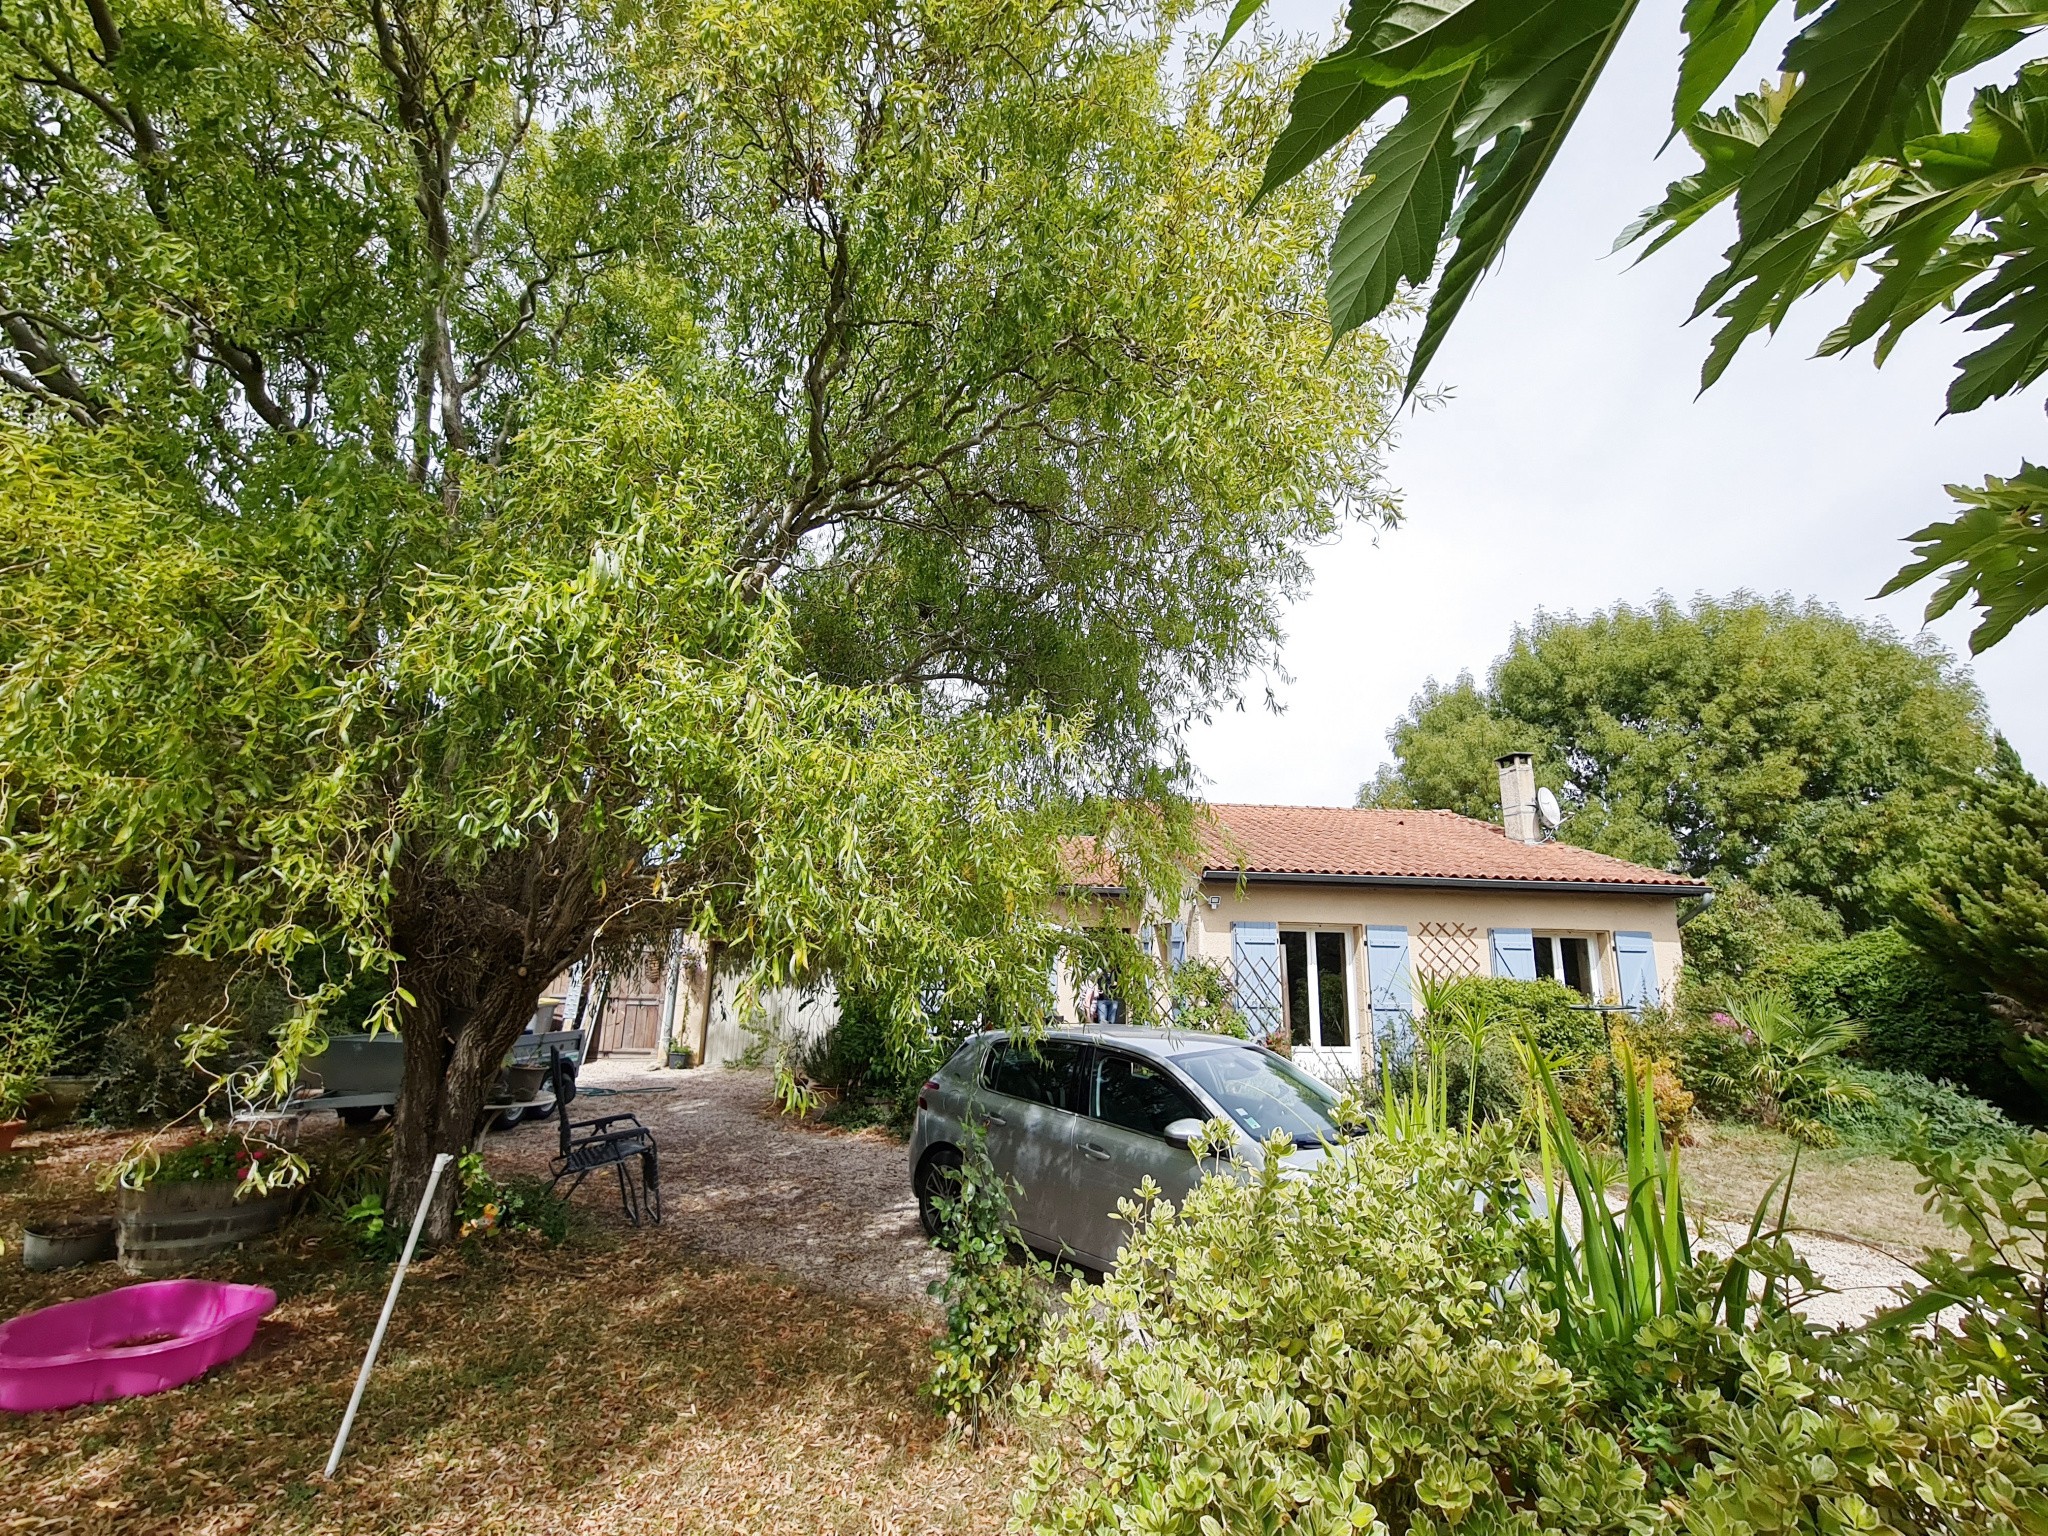 Vente Maison à Saint-Sulpice-sur-Lèze 4 pièces